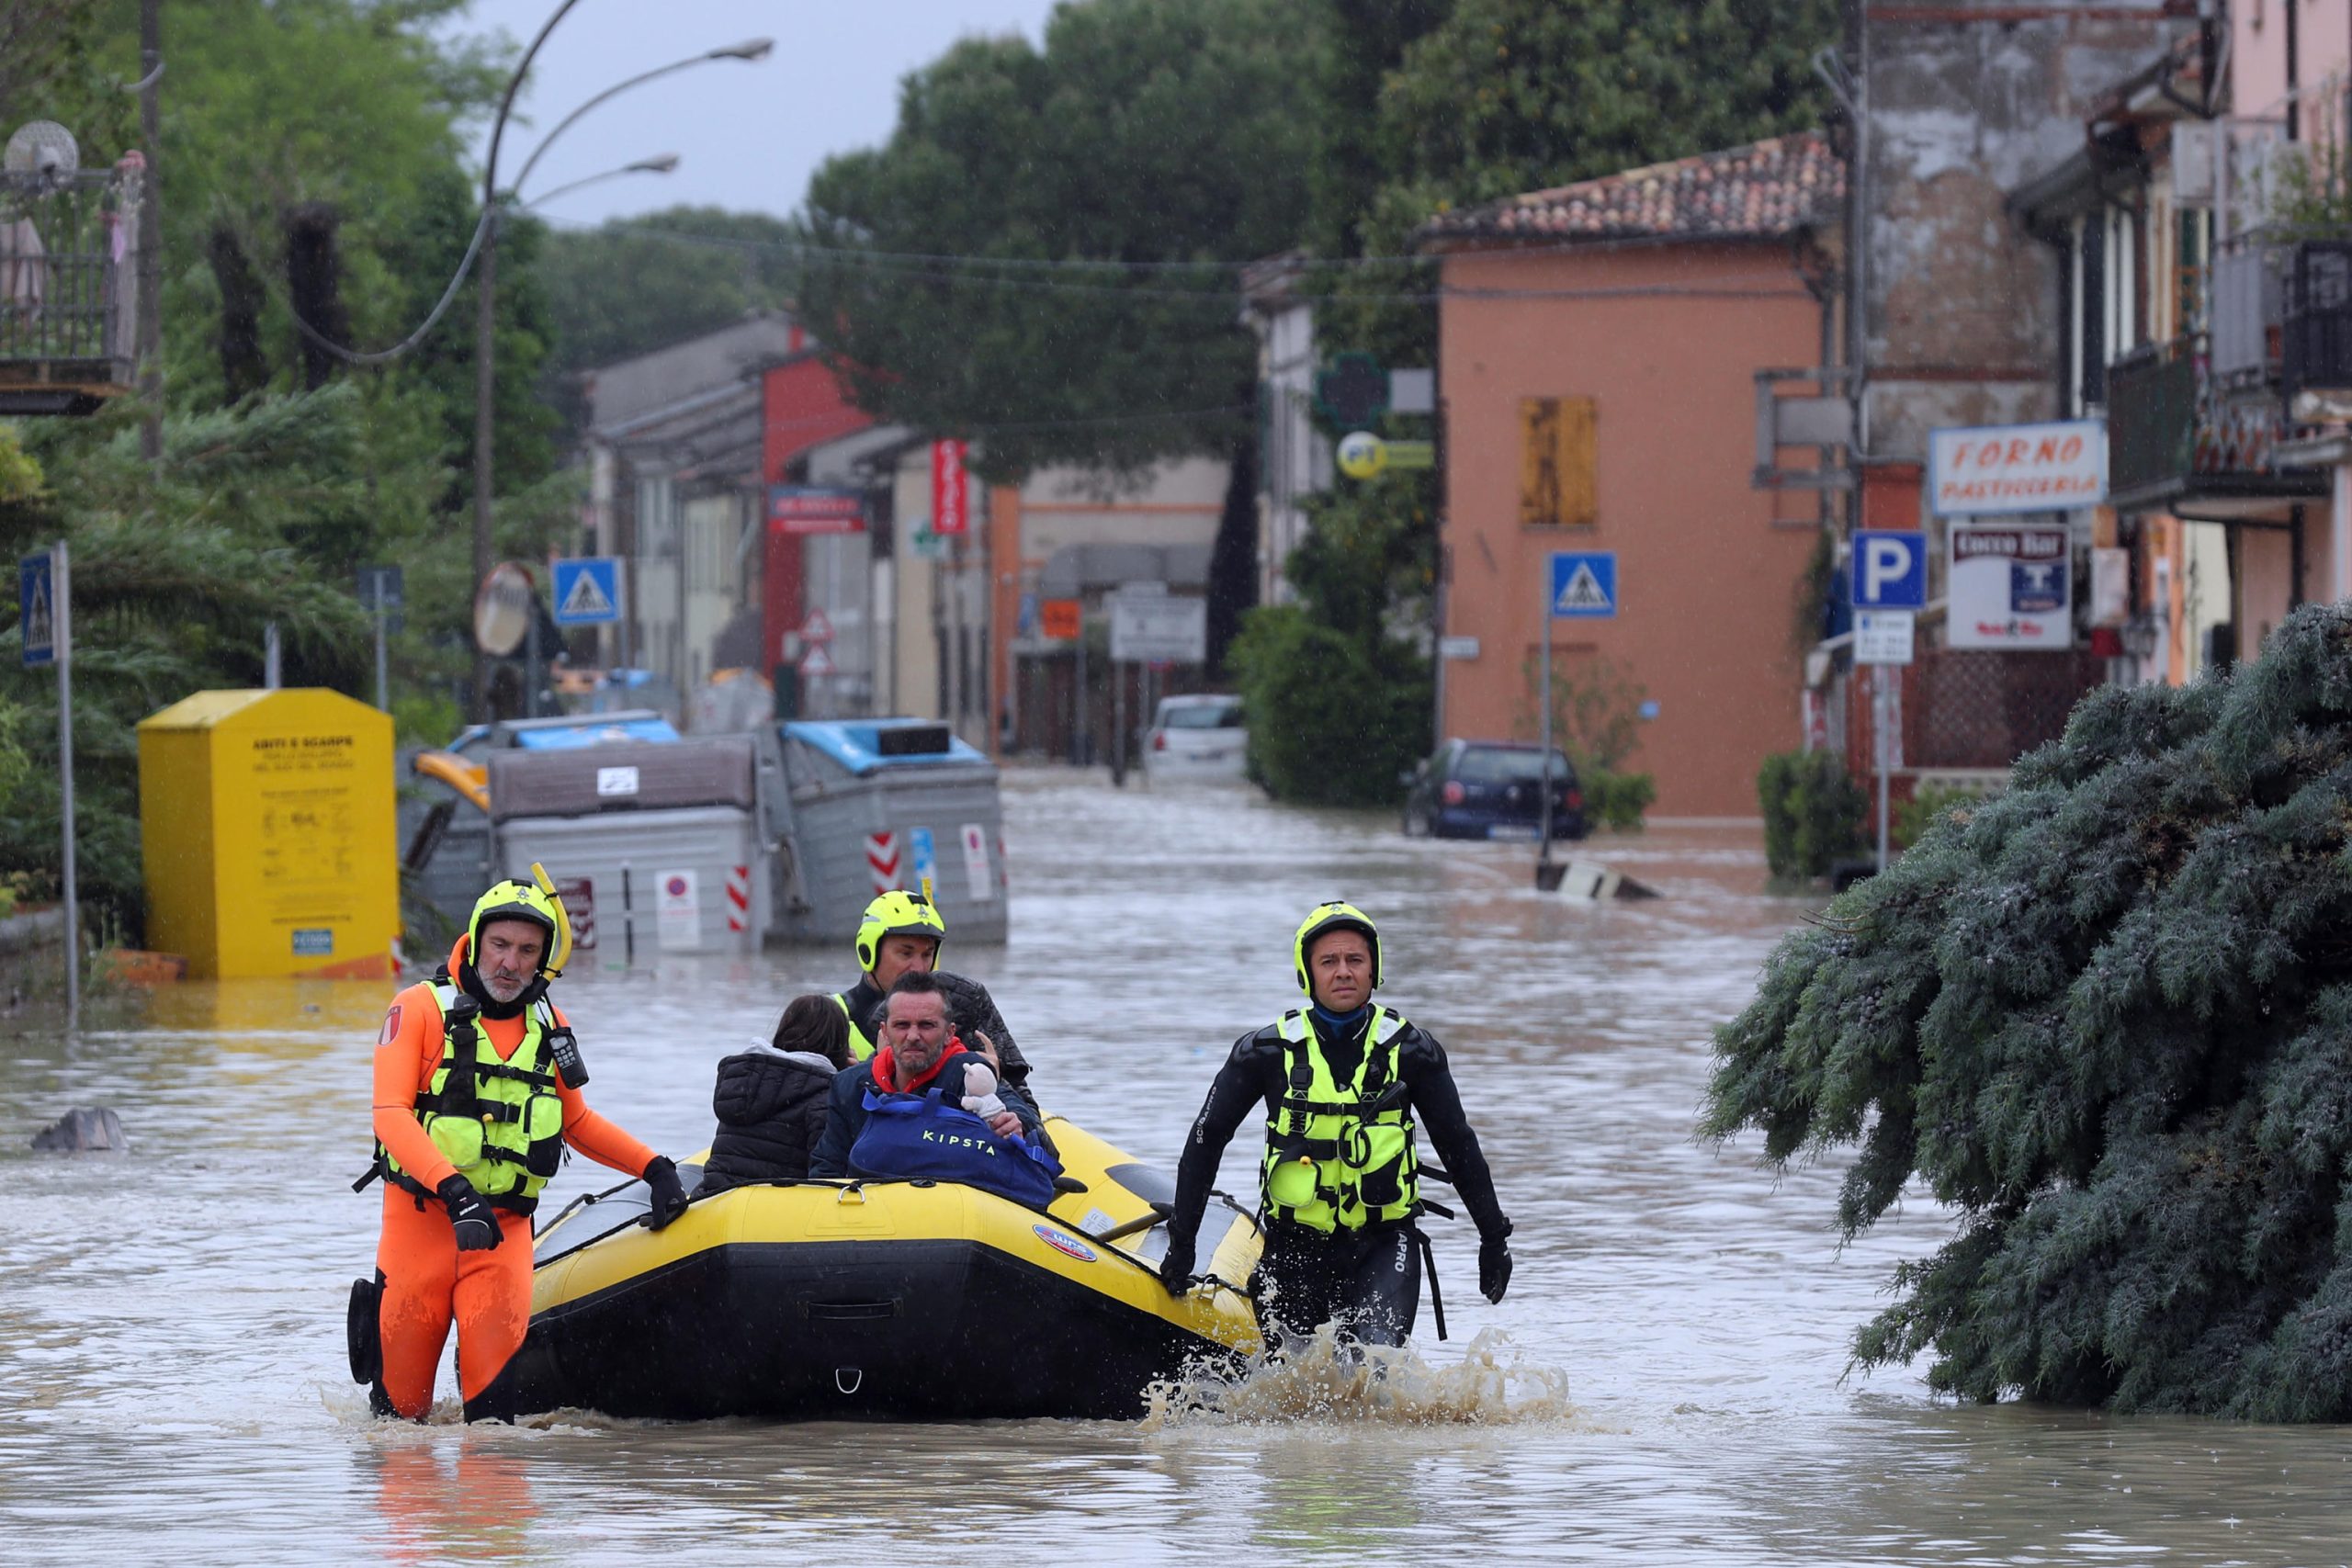 Fausto Pardolesi, Agenzia Territoriale regionale: “Ecco il motivo tecnico delle alluvioni in Emilia Romagna”